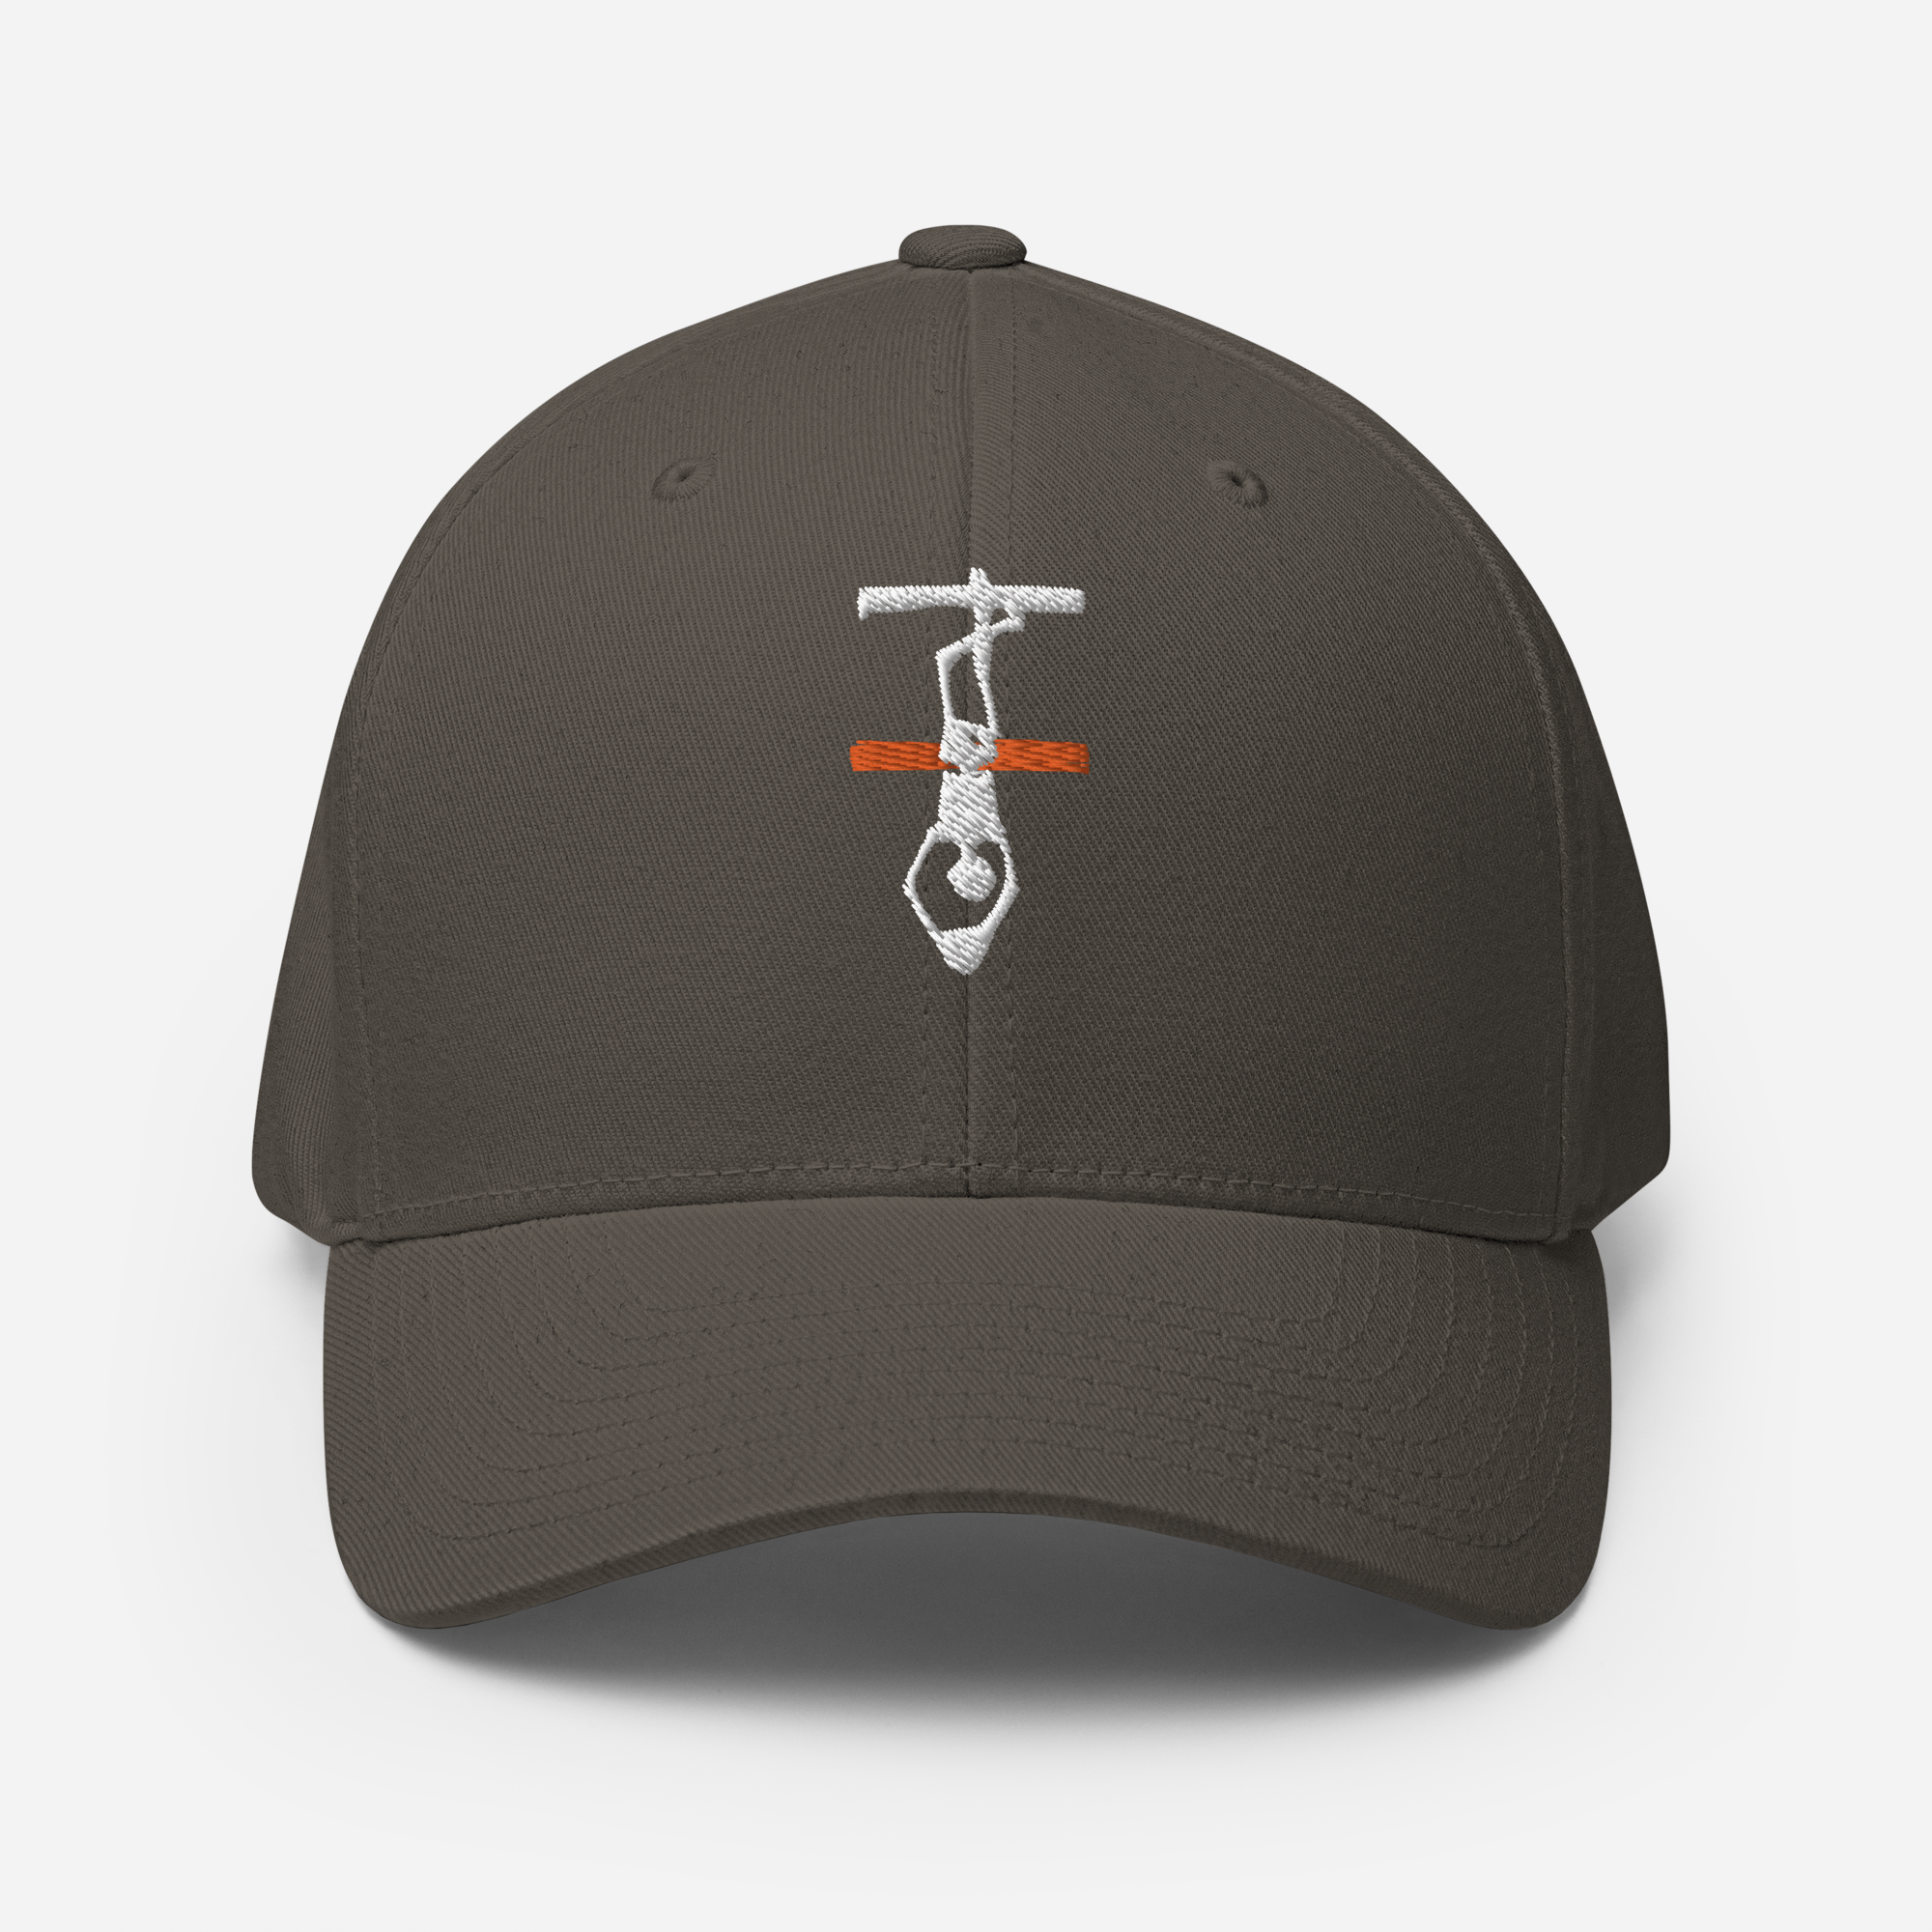 Thin Orange Line Hanged Man Structured Twill Cap - White Logo